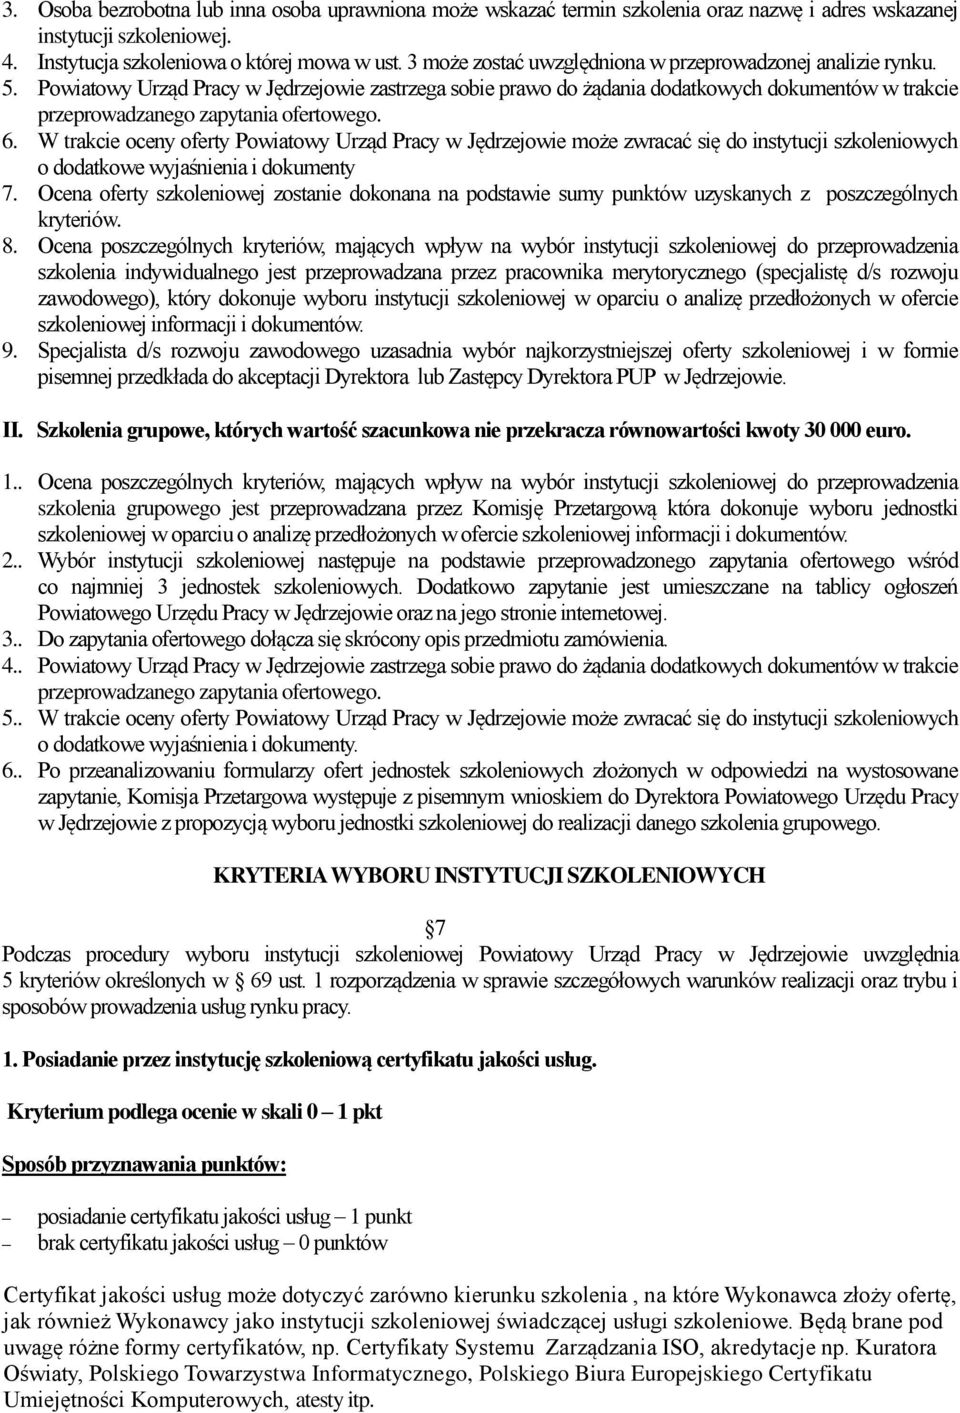 Powiatowy Urząd Pracy w Jędrzejowie zastrzega sobie prawo do żądania dodatkowych dokumentów w trakcie przeprowadzanego zapytania ofertowego. 6.